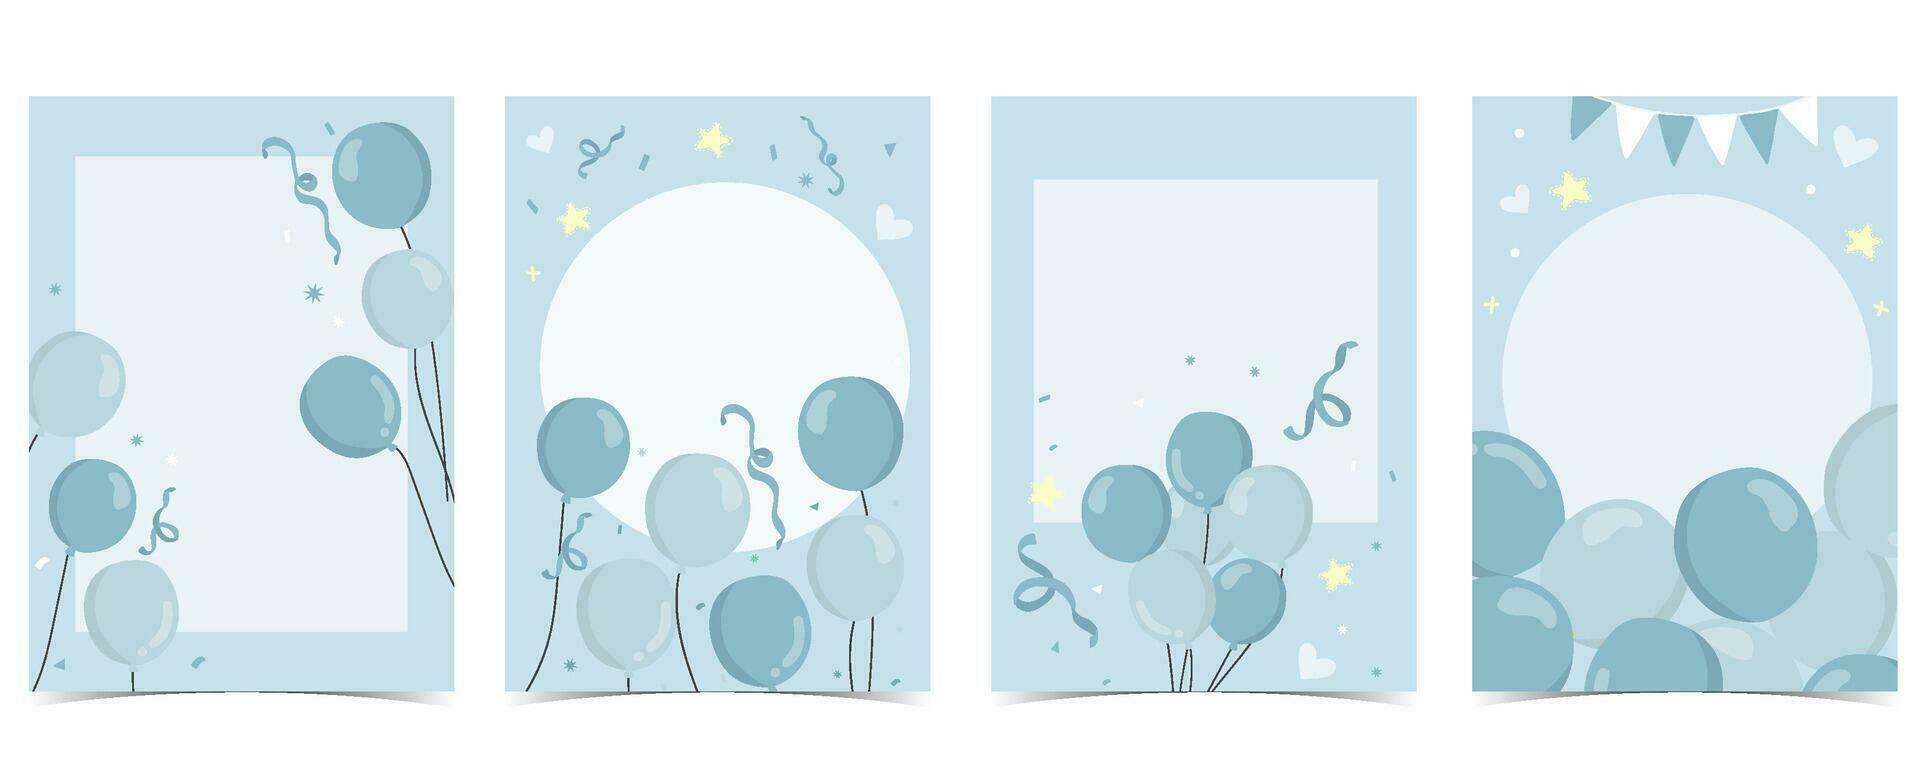 bebê chuveiro convite cartão para Garoto com balão, nuvem,céu, azul vetor